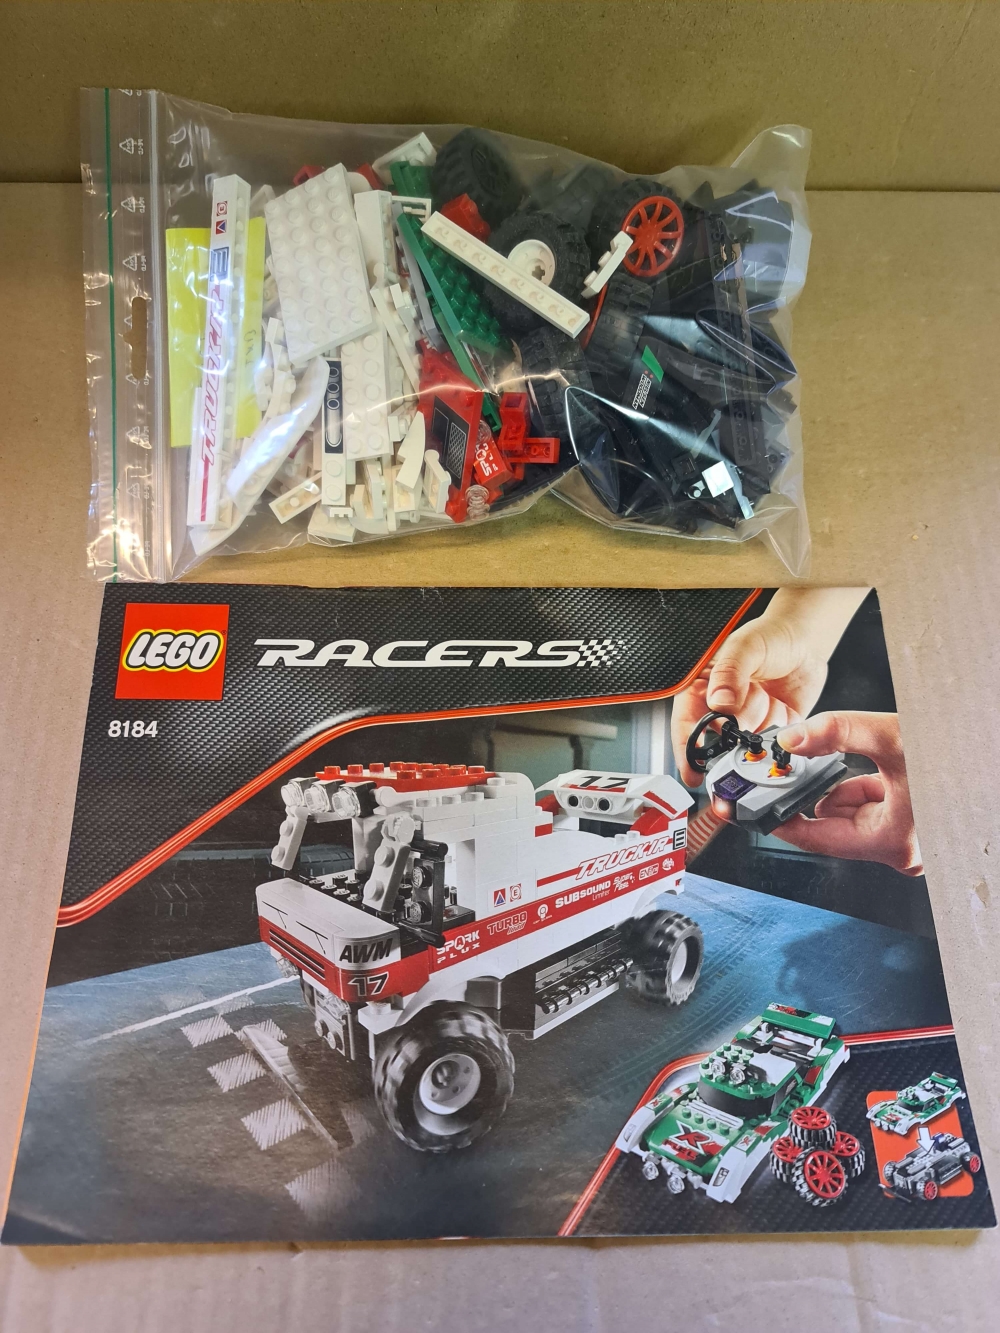 Sett 8184 fra Lego Racers serien.
Flott sett. 
Komplett med alle klistrermerker og manual.